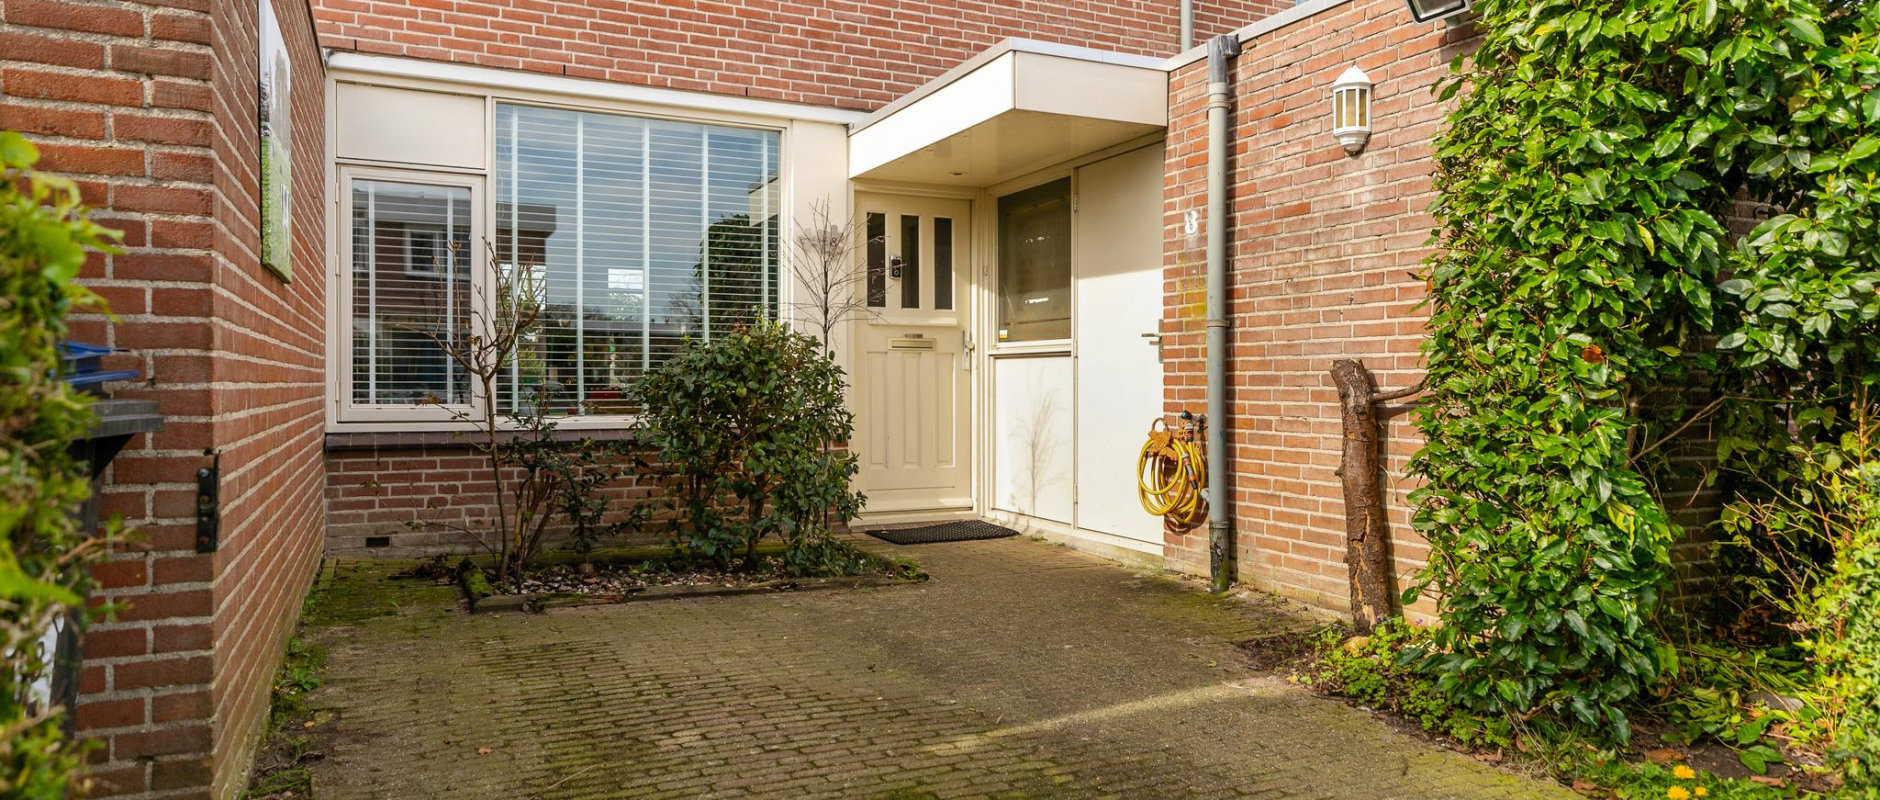 Woning te koop aan de Rijswijkstraat 8 te Almere